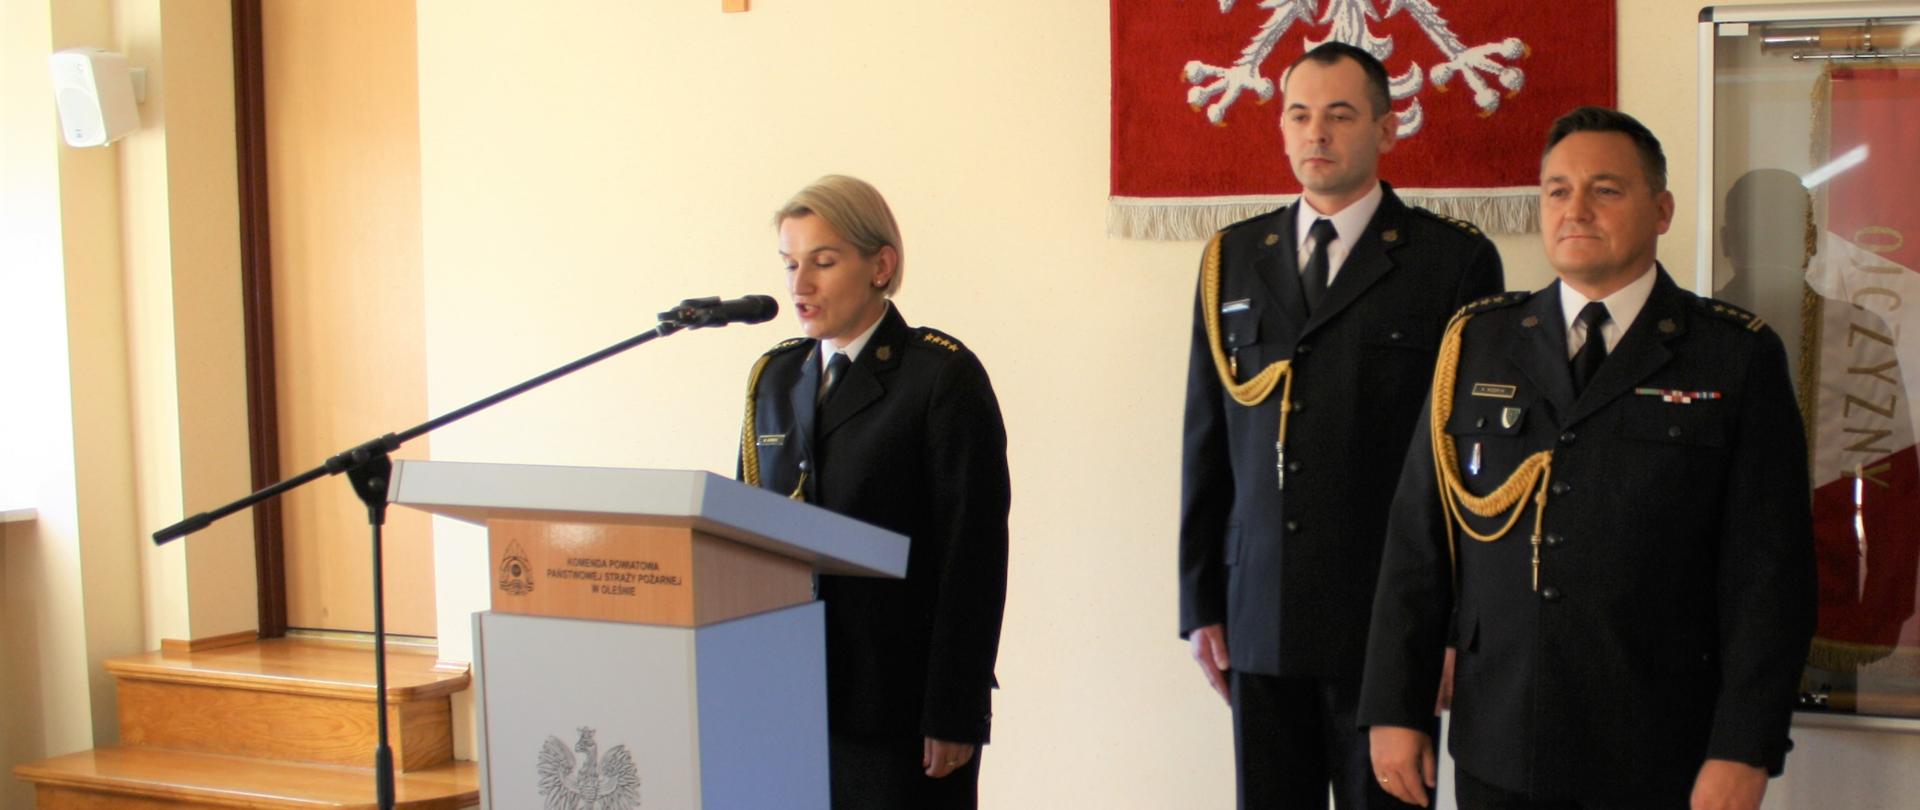 Na zdjęciu strażacy stoją w mundurach wyjściowych, jedna osoba przemawia za mównicą, na ścianie wisi godło Polski i Krzyż.